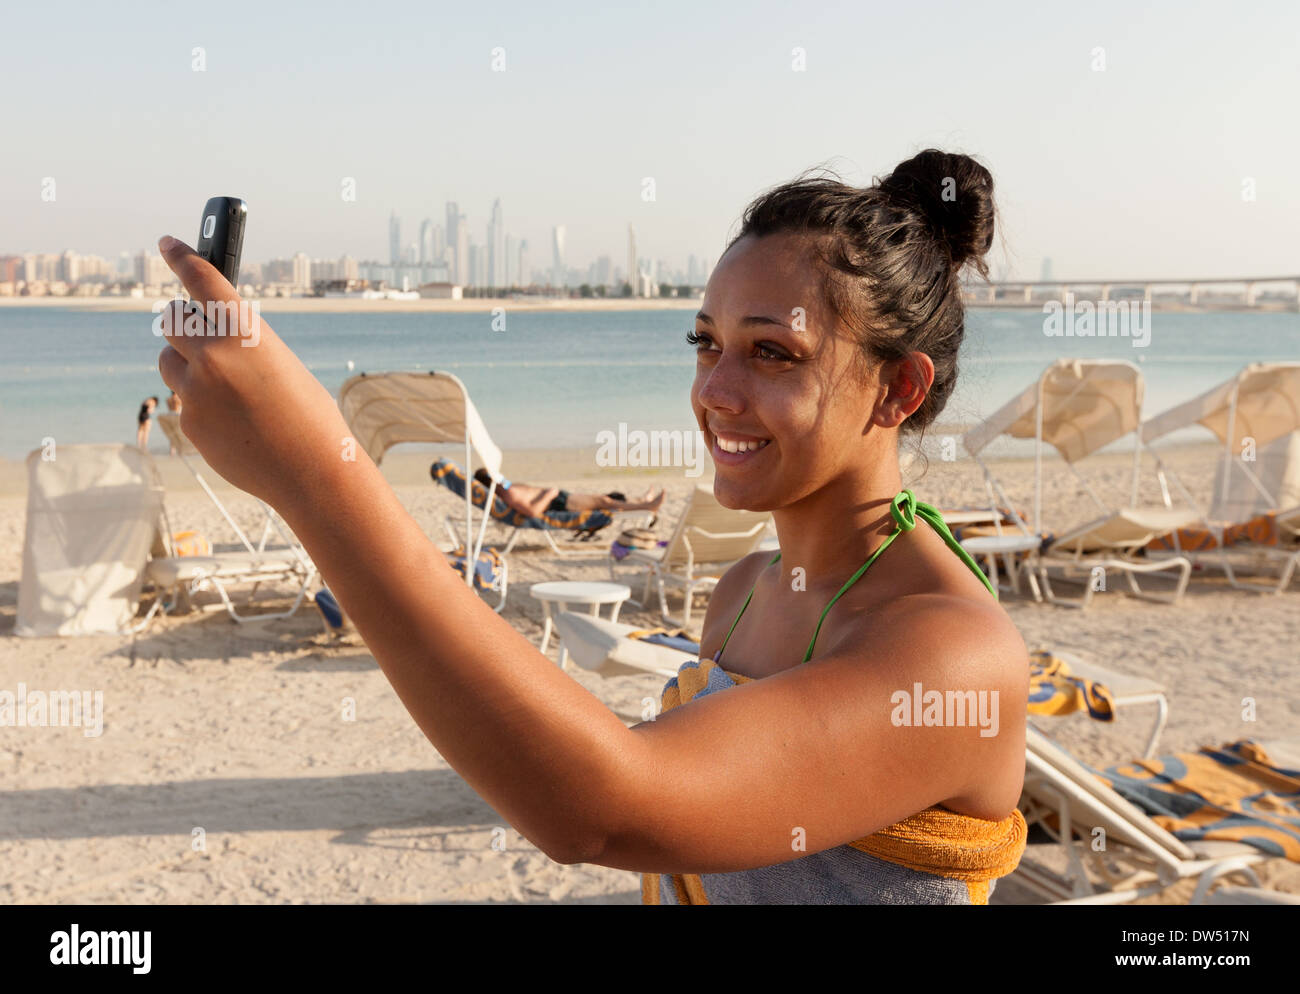 Frau, die ein Selfie Foto am Strand im Urlaub, Atlantis Hotel Strand, Dubai Vereinigte Arabische Emirate VAE Naher Osten Stockfoto